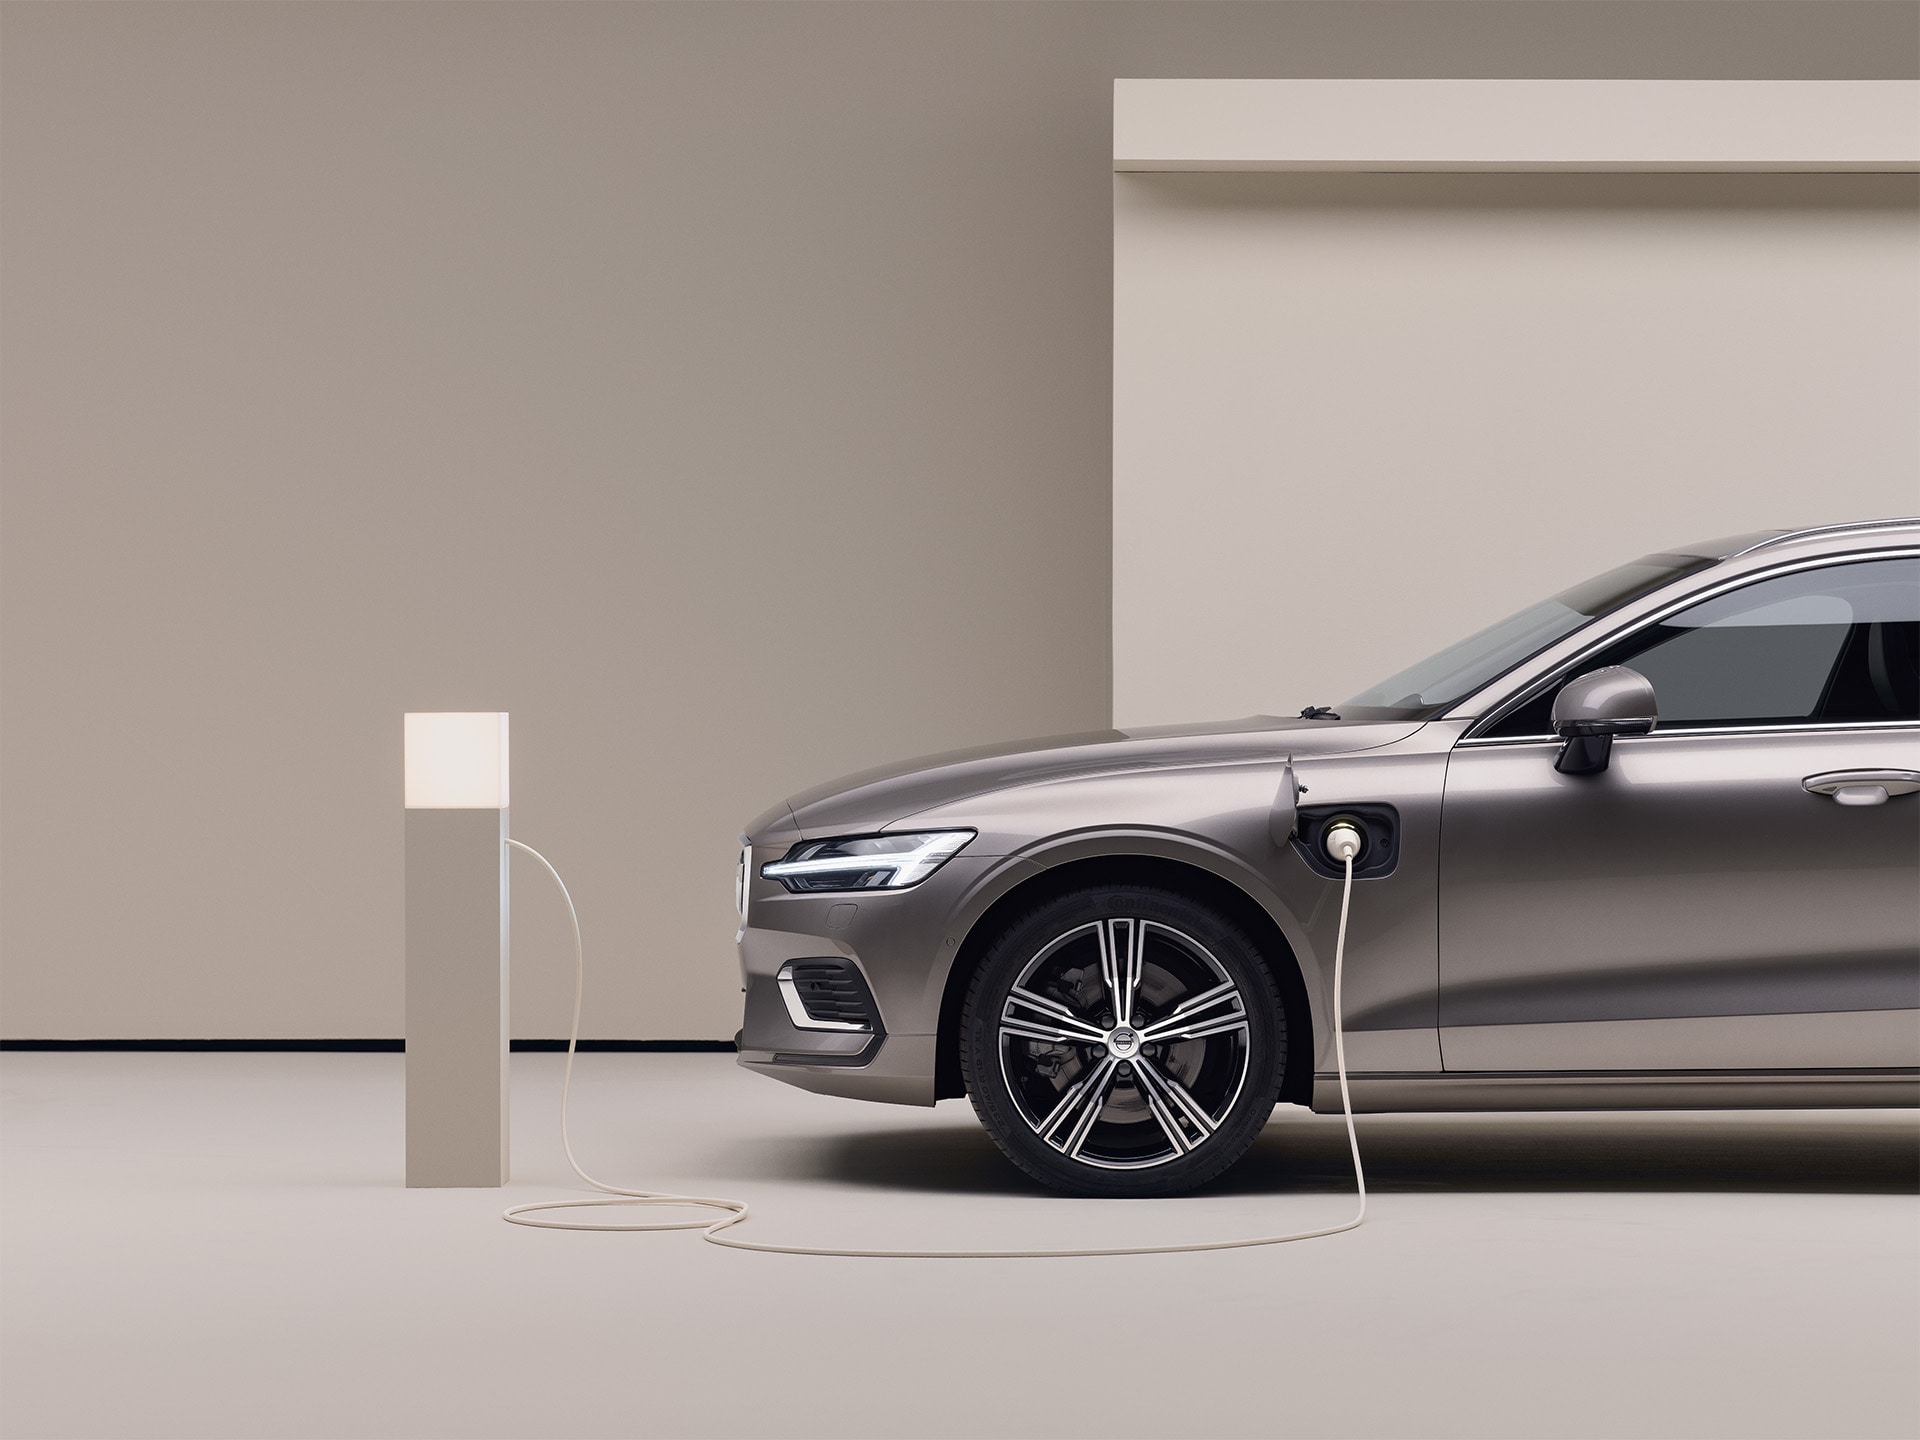 Stāvvietā novietots pelēkas krāsas Volvo universālis, pievienots uzlādes punktam